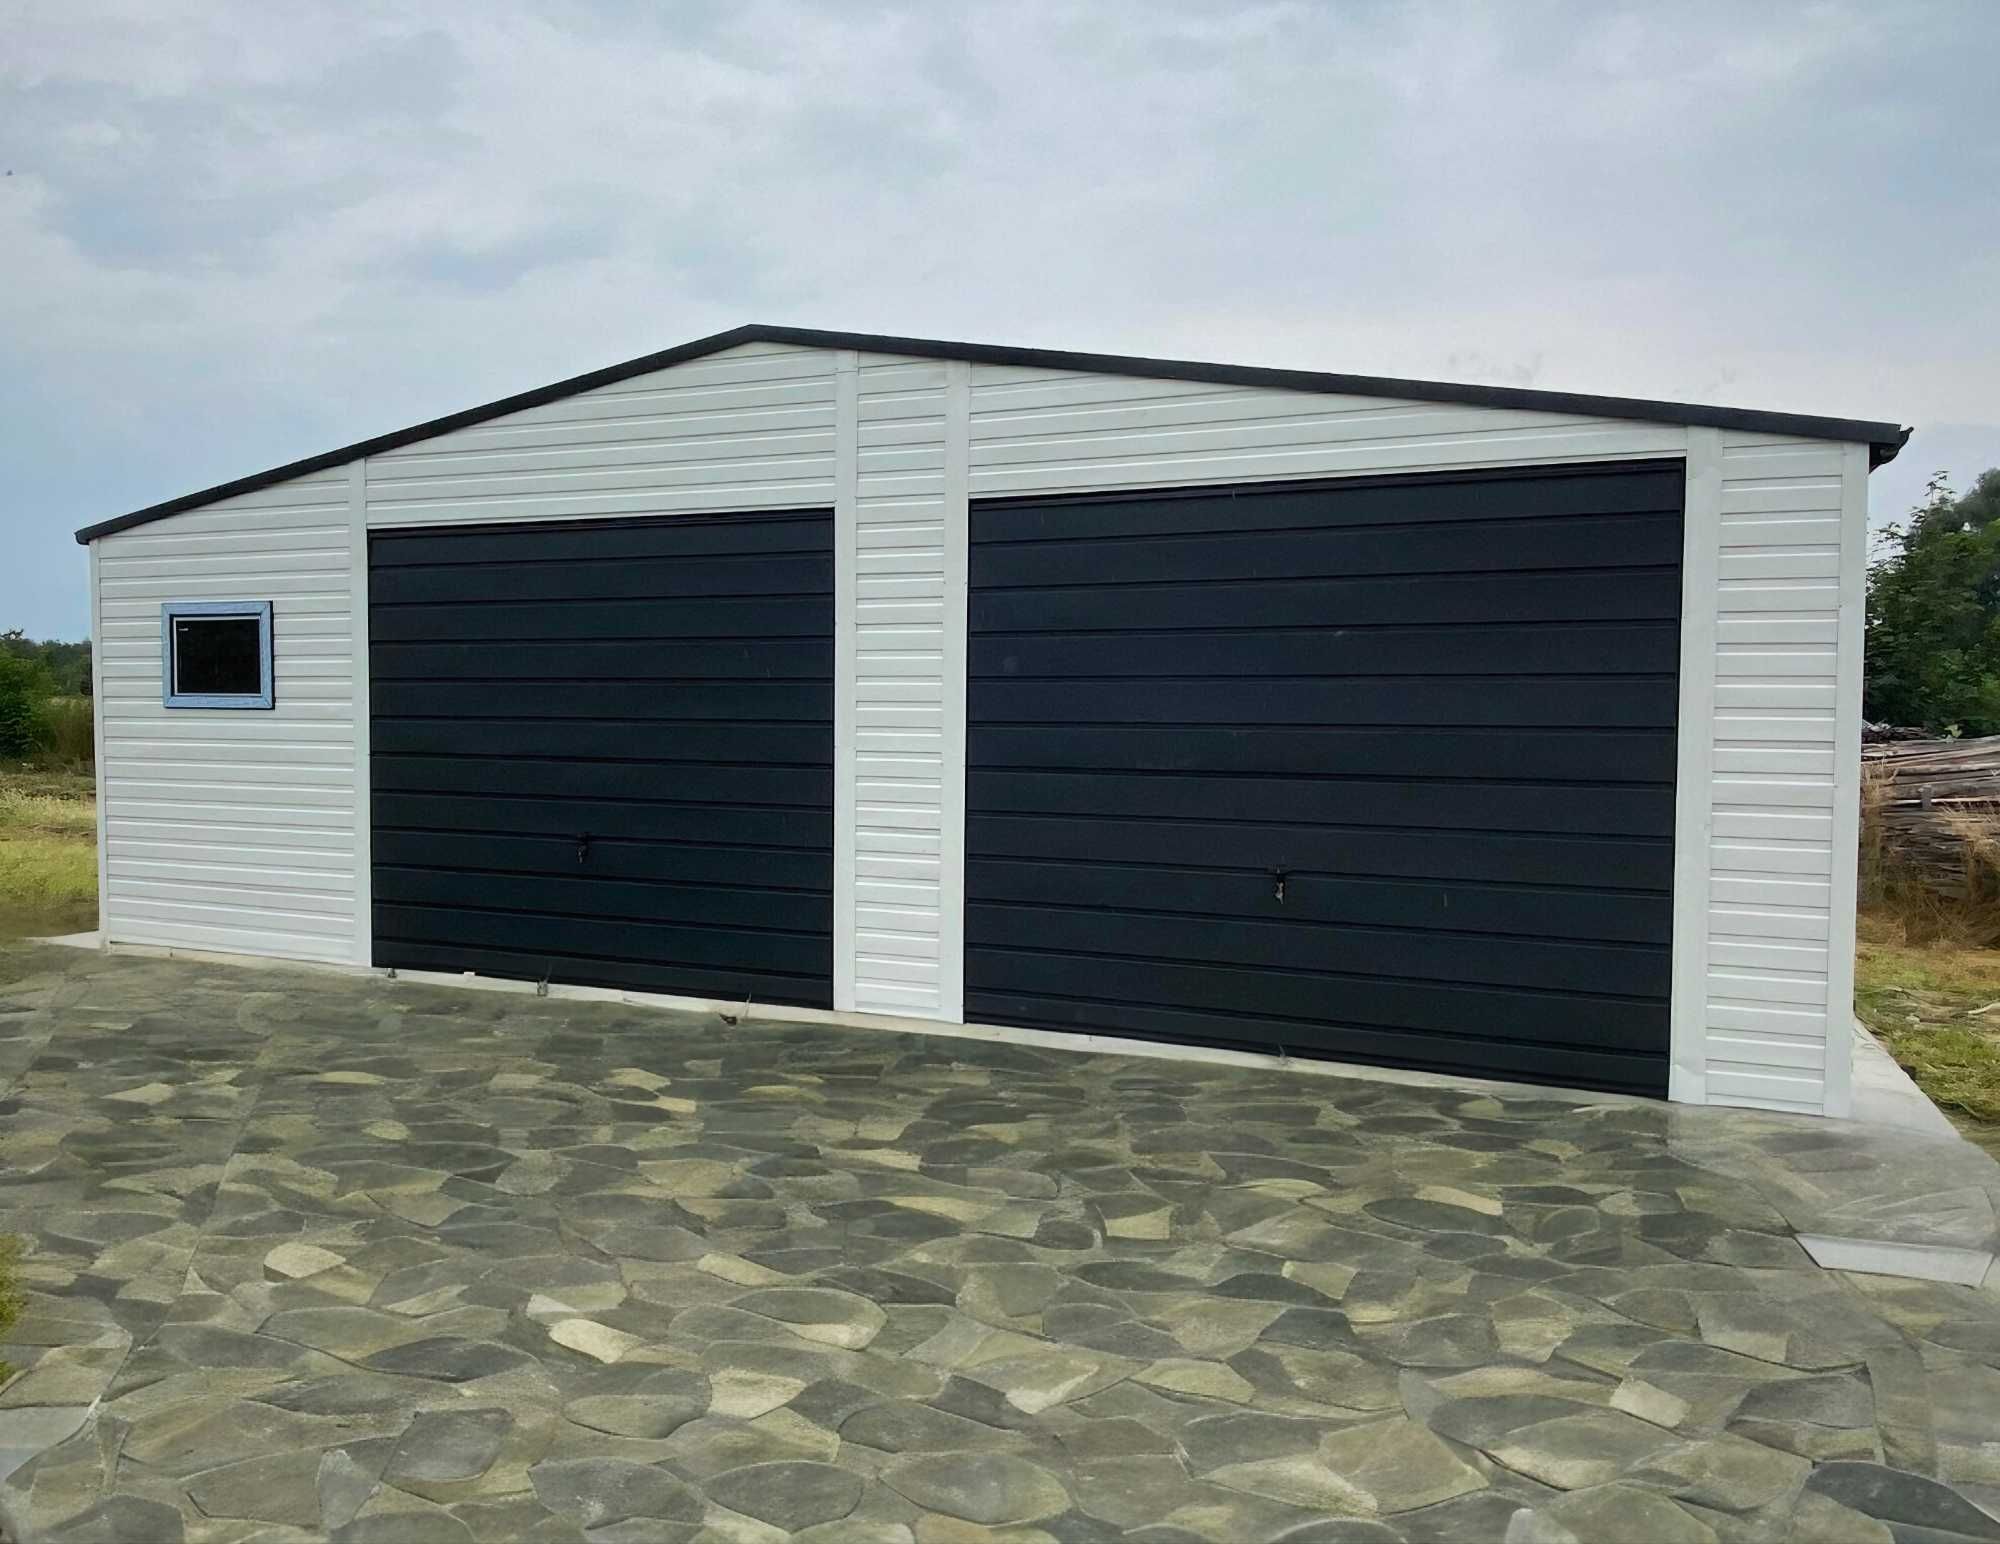 Garaż blaszany blaszak garaz ogrodowy nowoczesny design 9x5m (10x6)